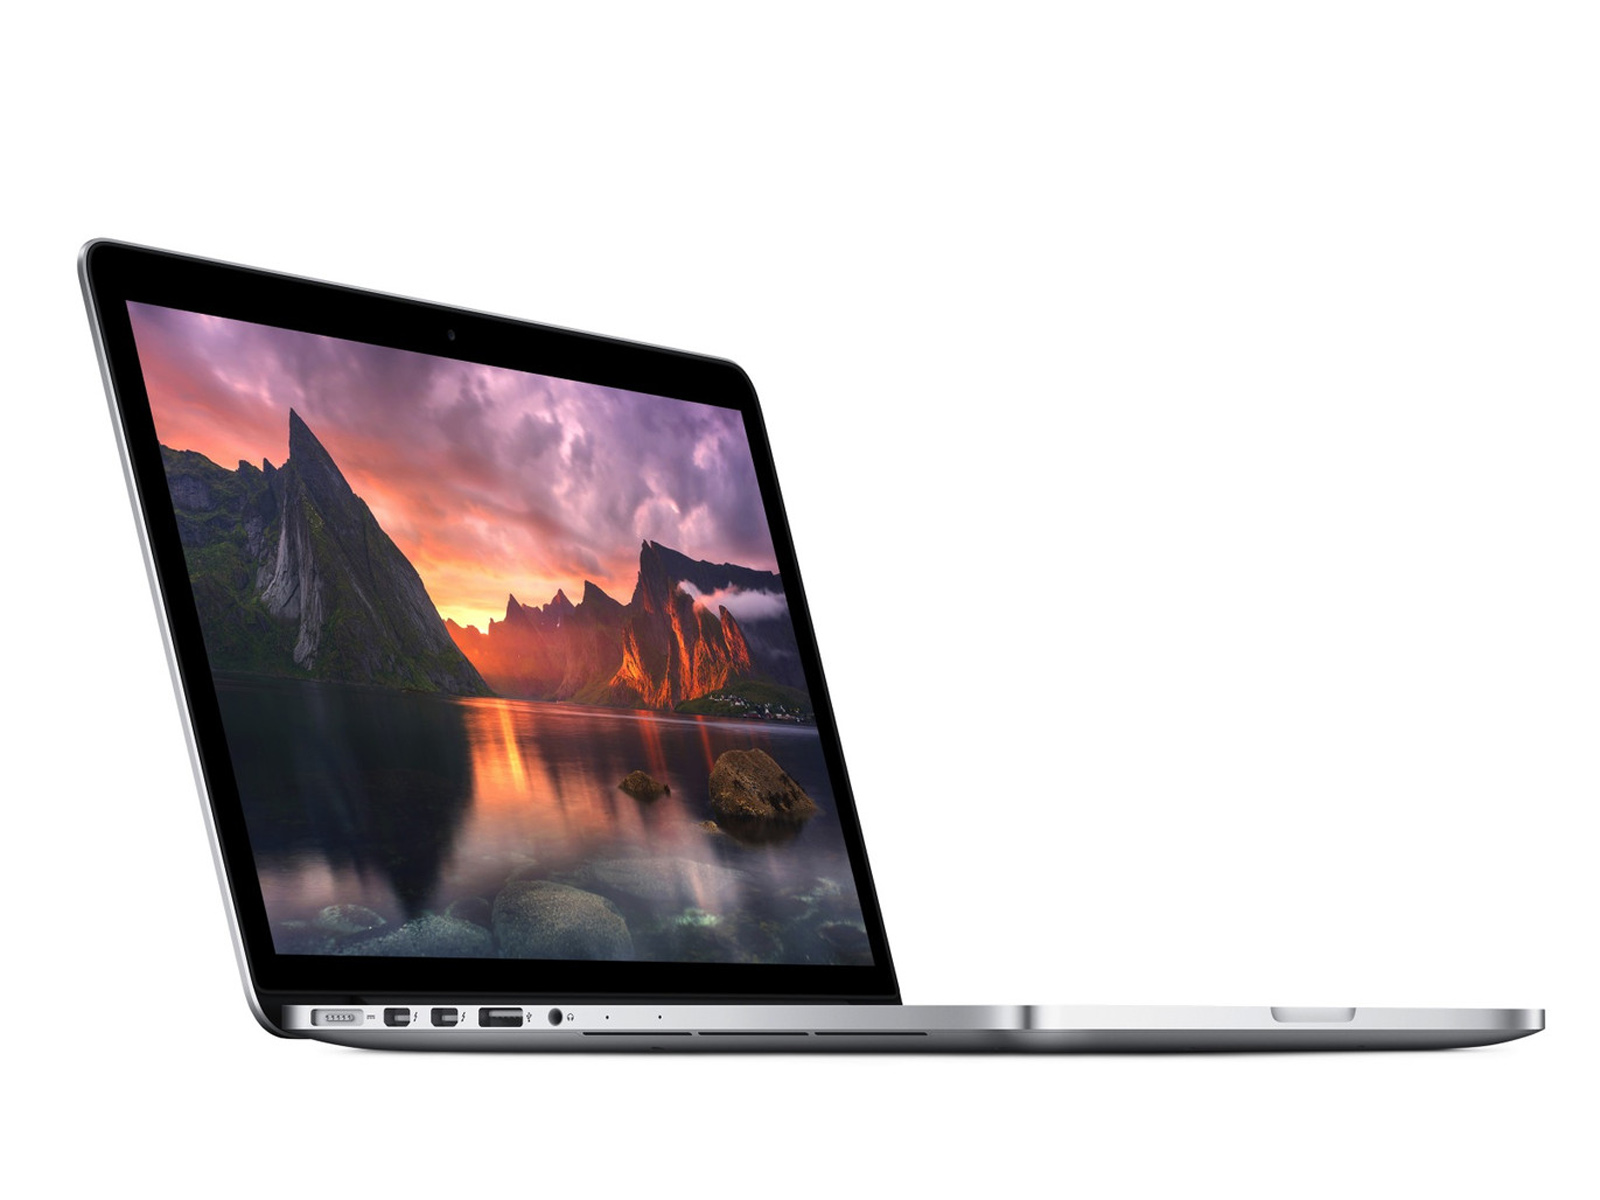 Apple MacBook Pro 15 pouces Retina (2015) - CNET France